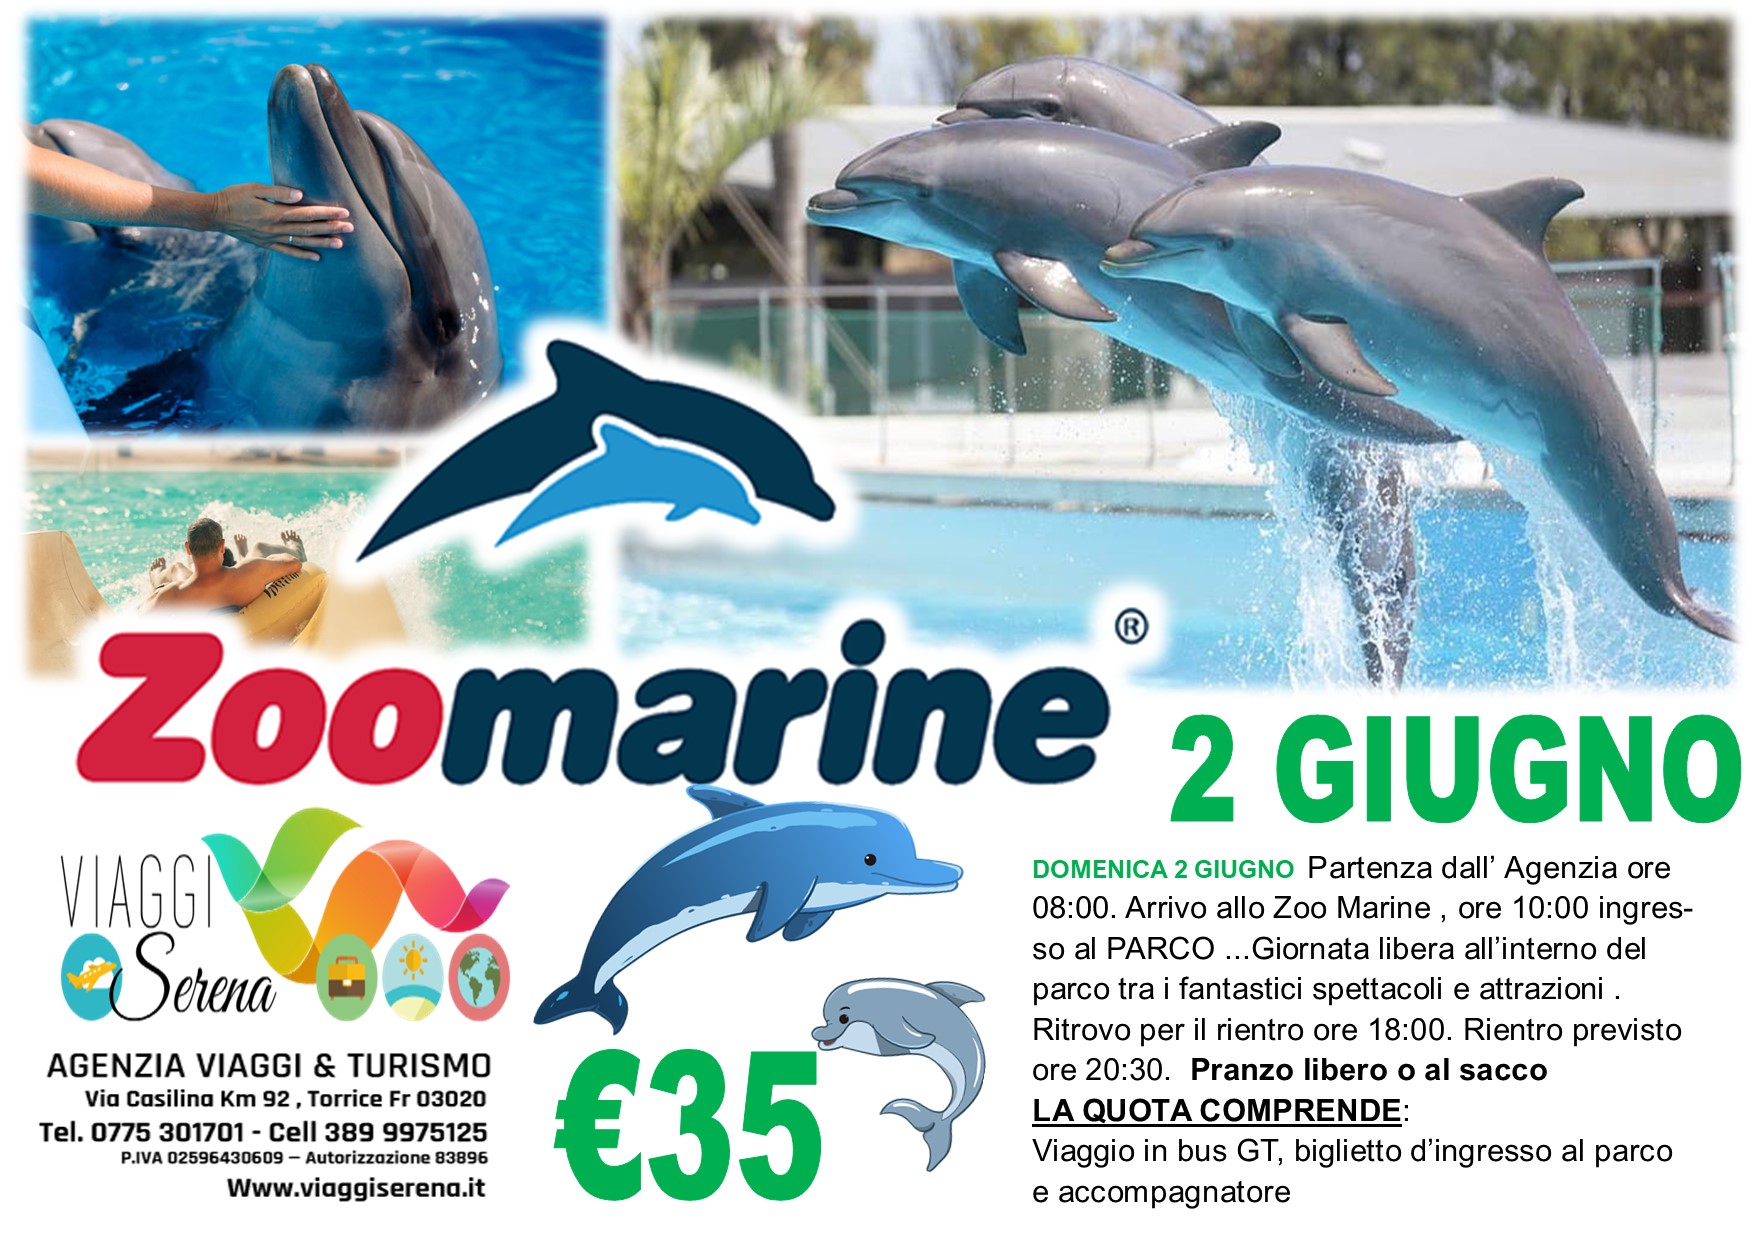 Viaggi di gruppo: Zoo marine 2 Giugno € 35,00